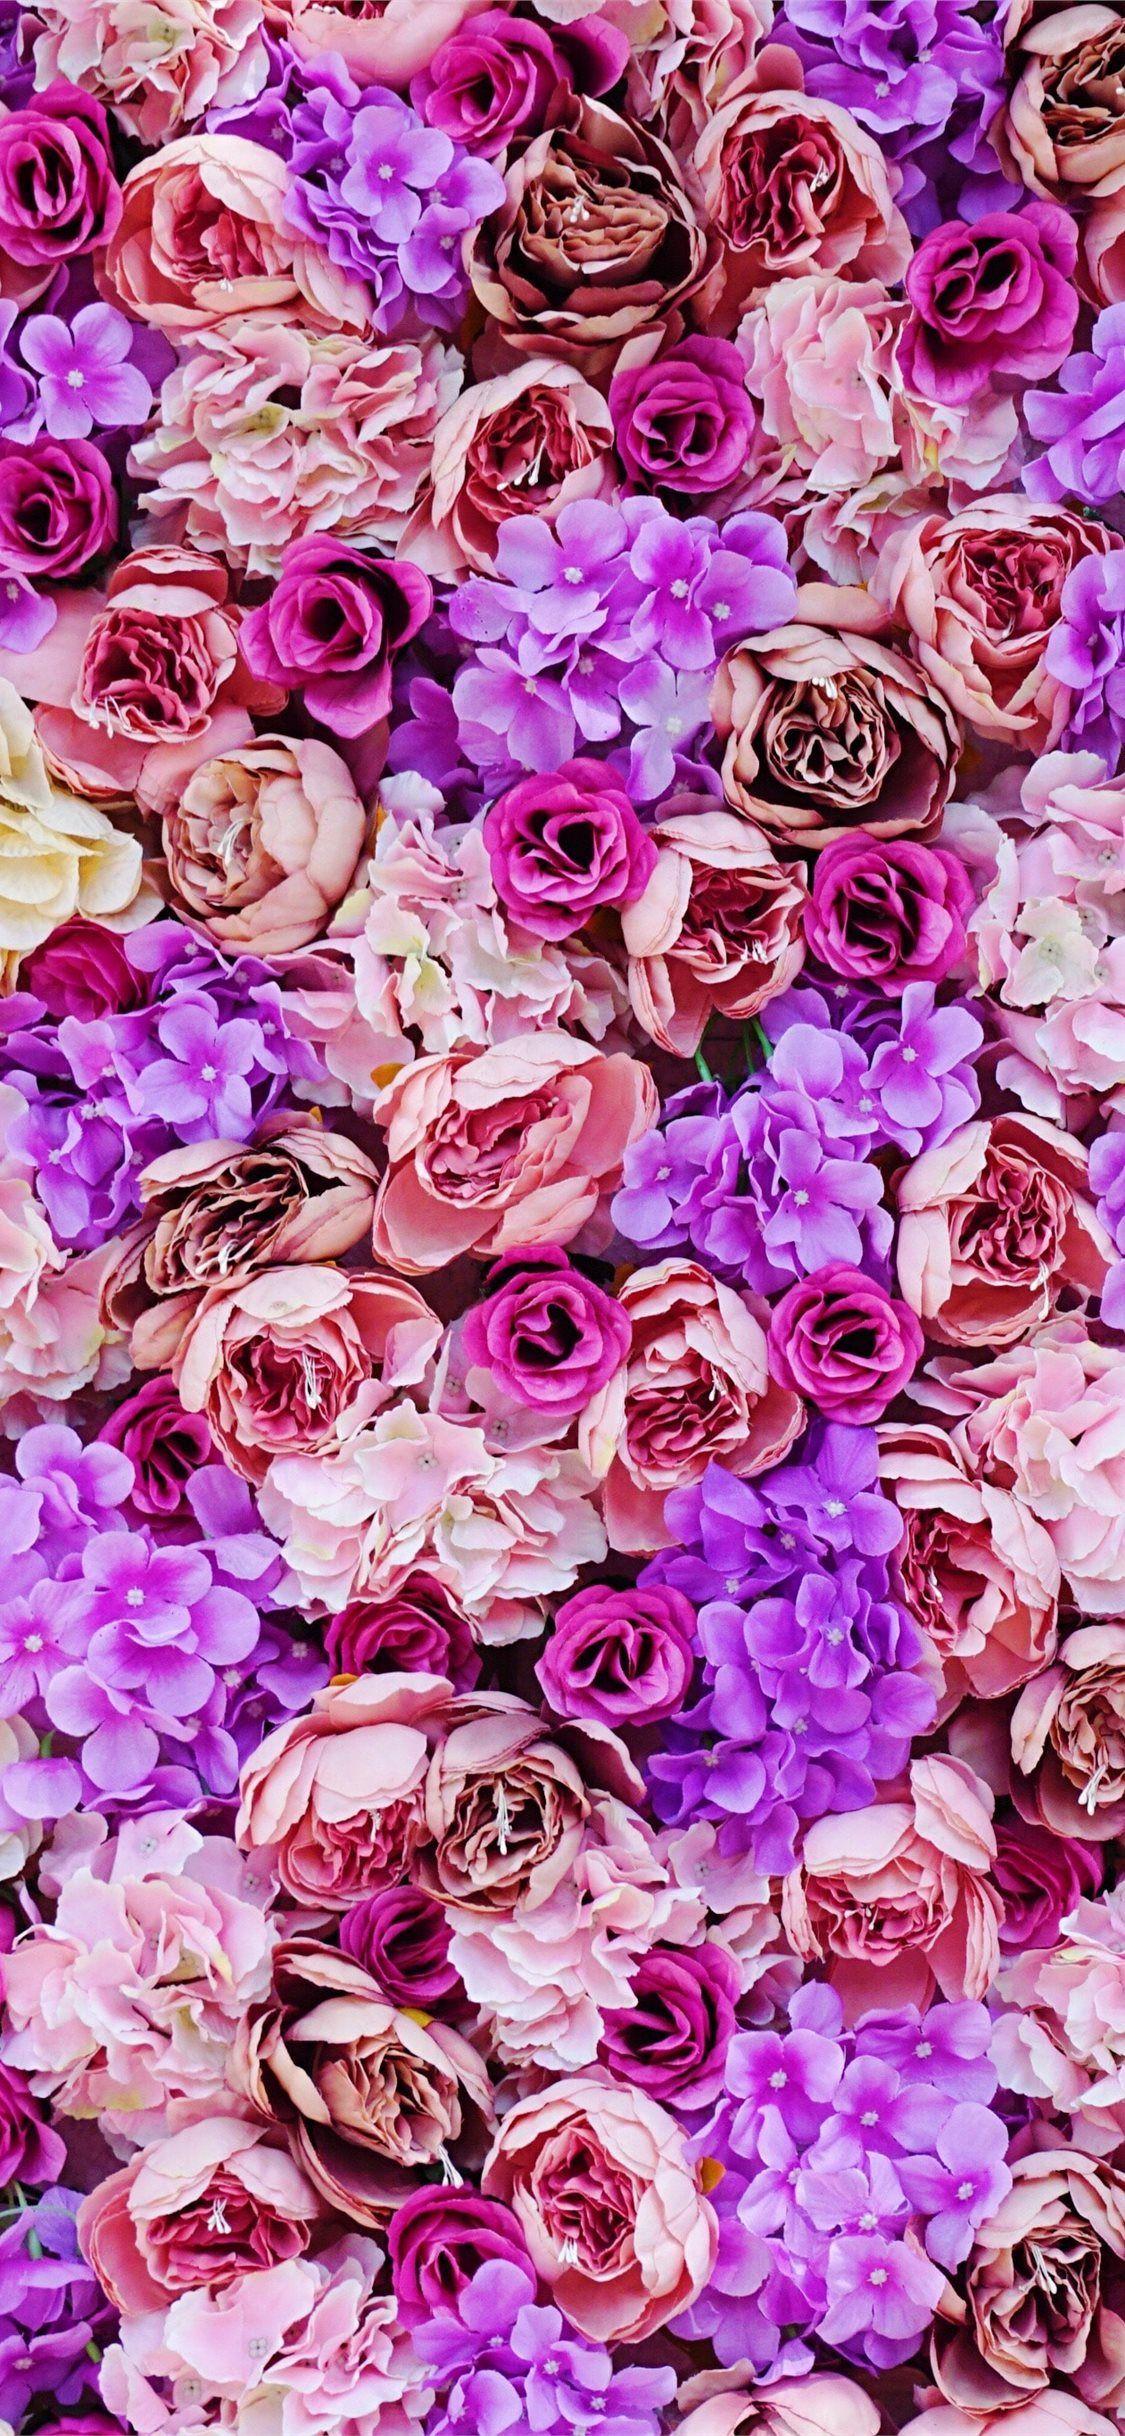 Hoa màu hồng và tím kết hợp tạo nên một bức tranh đầy nghệ thuật và tinh tế. Hãy để mình lạc vào bức tranh đấy và cảm nhận vẻ đẹp tuyệt vời của hoa màu hồng và tím.